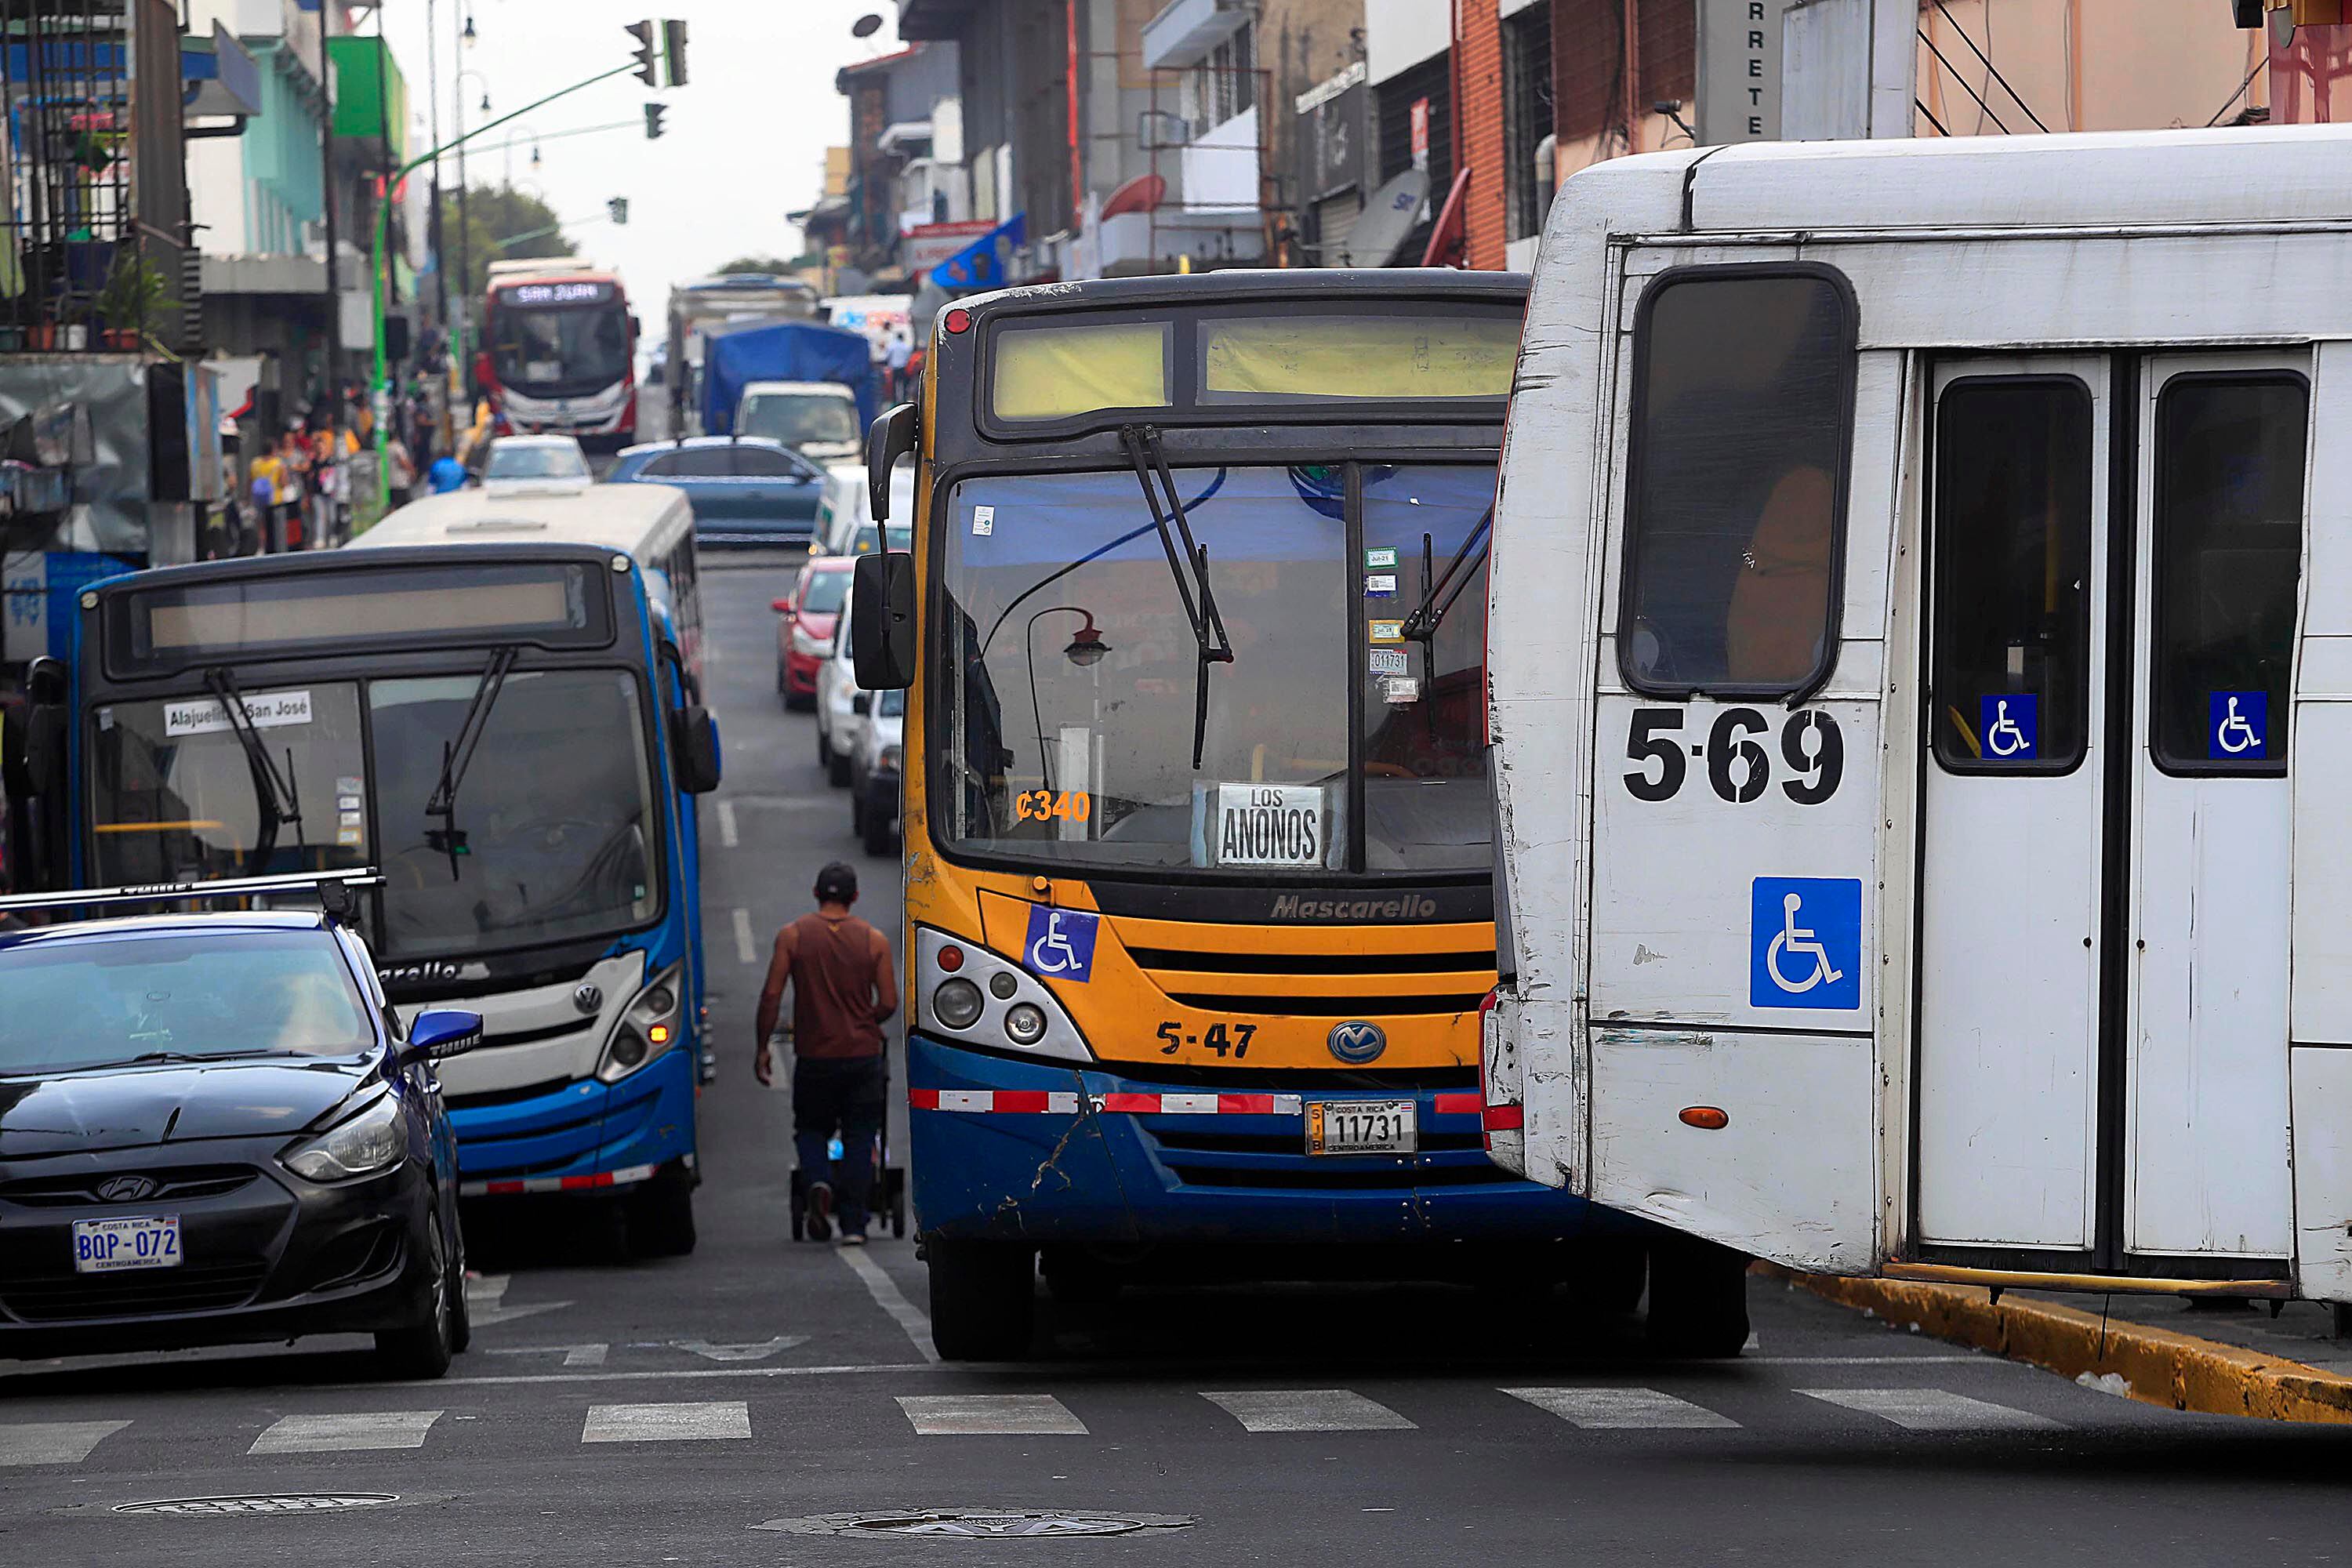 Un sector donde podrían canalizarse dineros, bajo los criterios de elegibilidad climática previstos, sería el transporte público en autobuses. Fotografía: 